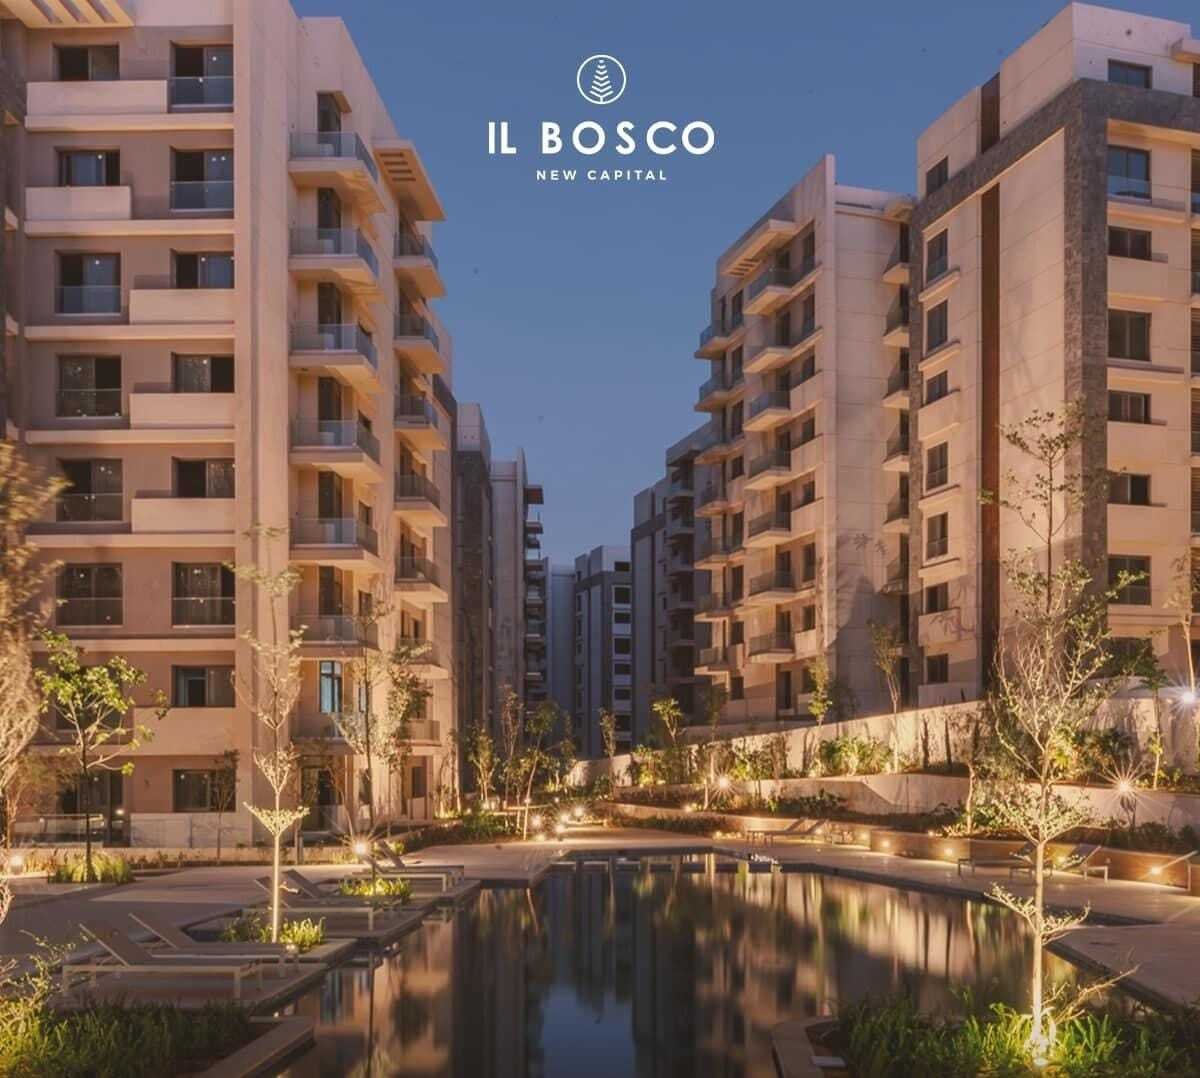 شقة للبيع بالعاصمة الإدارية الجديدة مساحة149متر في كمبوند IL BOSCO | THE PEAK PROPERTIES